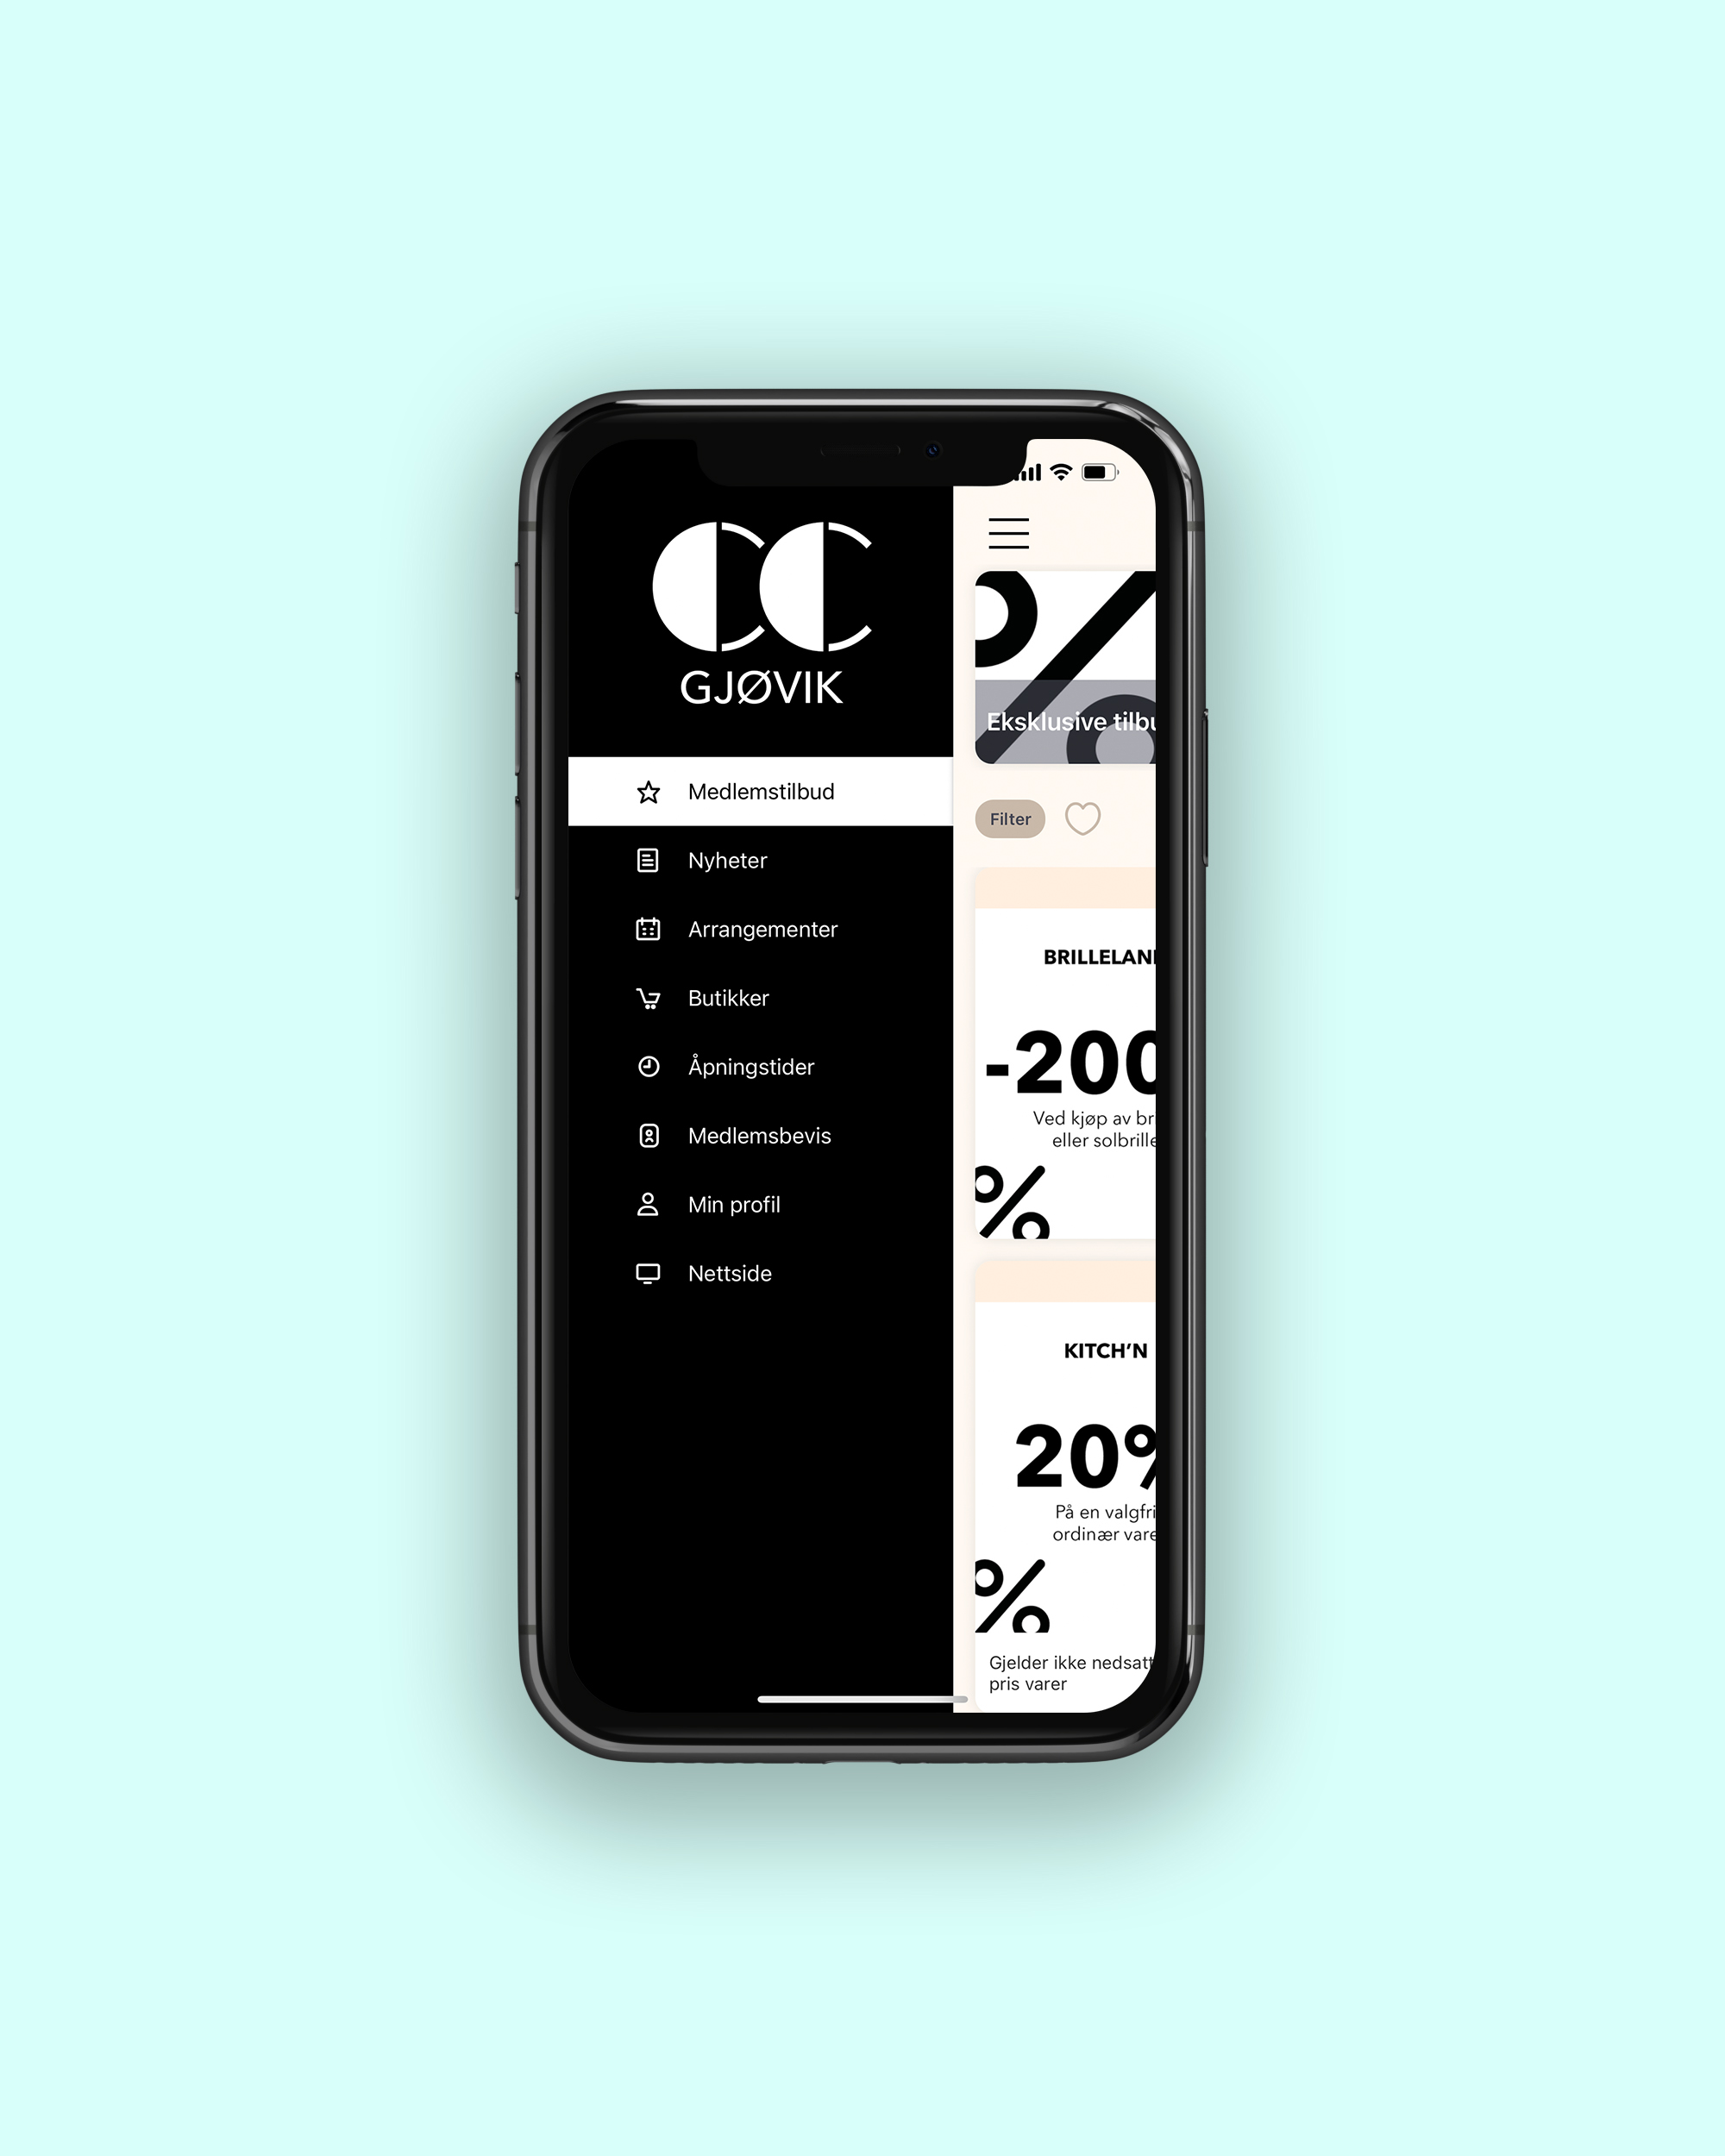 CC Gjøvik kundeklubb app, forside